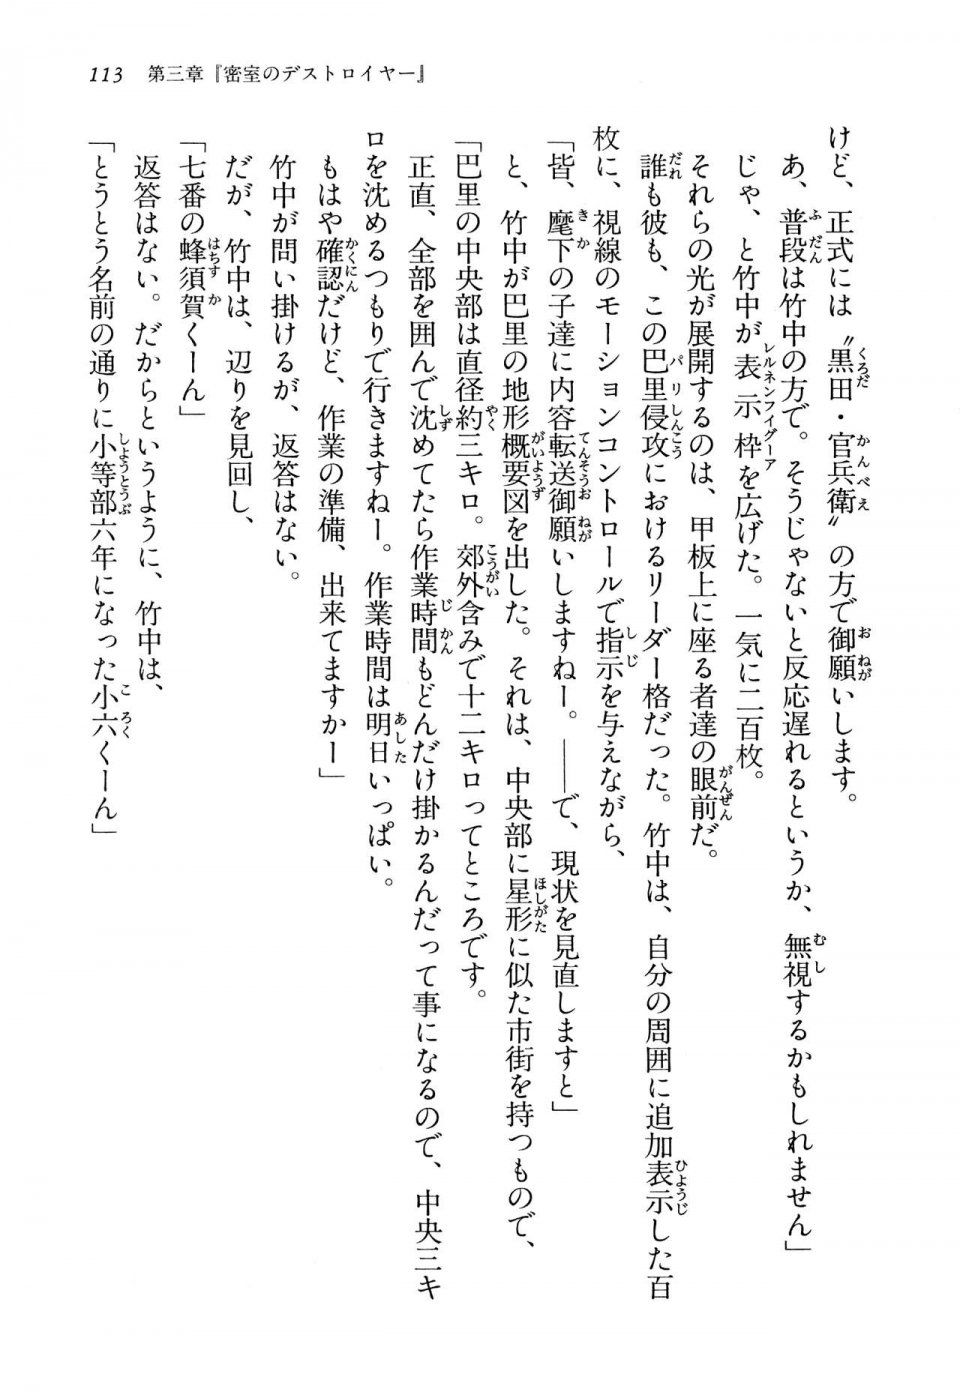 Kyoukai Senjou no Horizon LN Vol 13(6A) - Photo #113